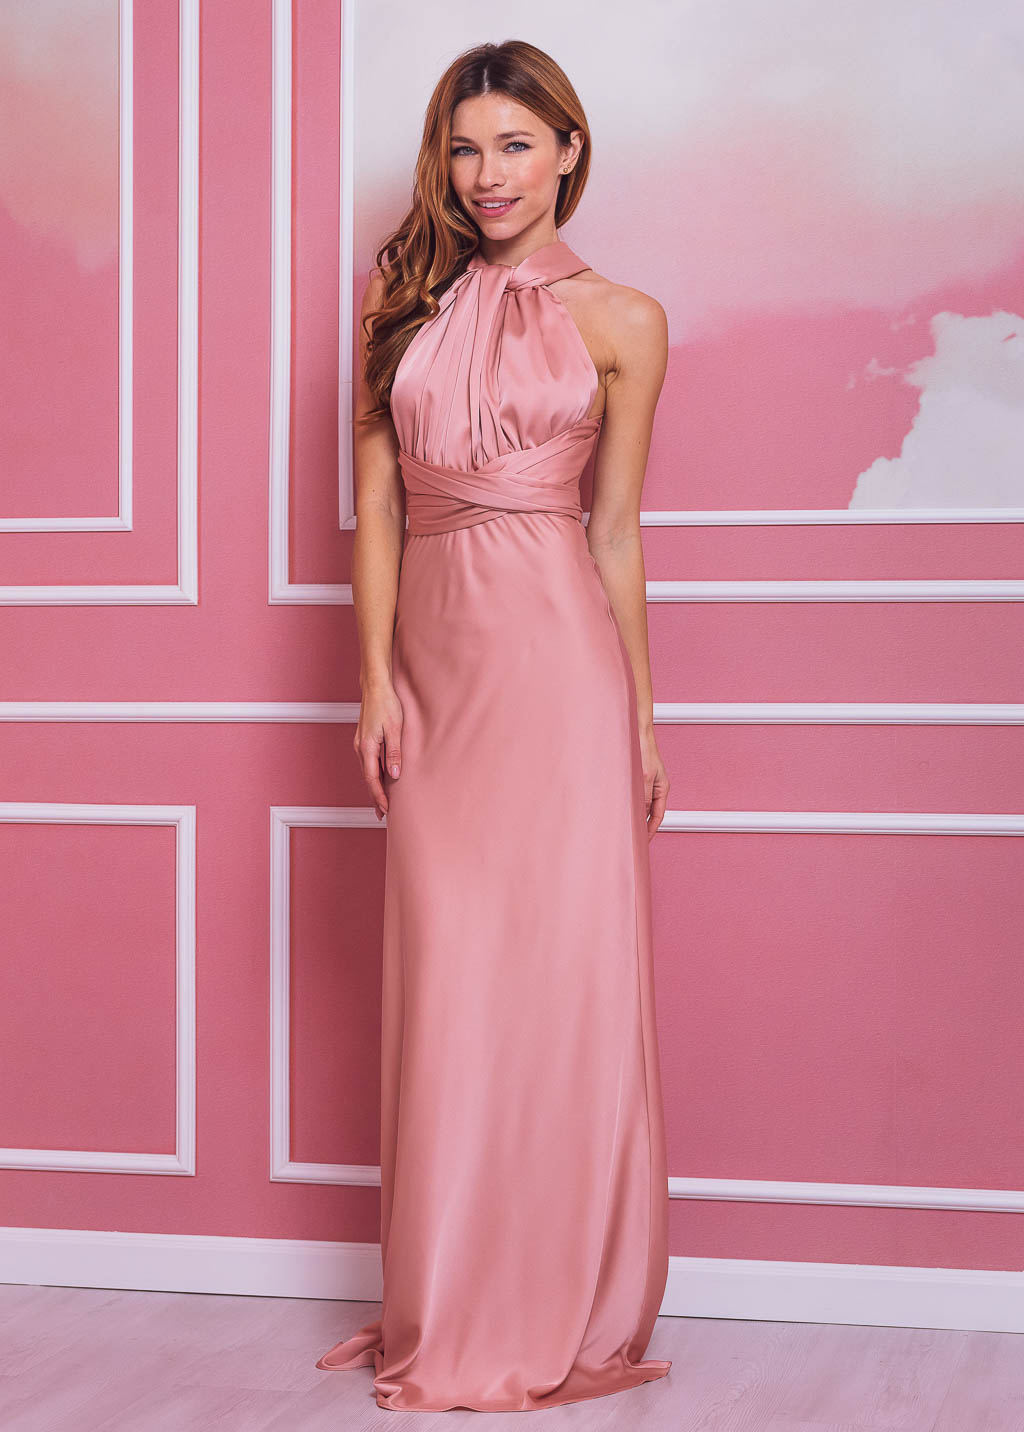 Blush pink infinity dress